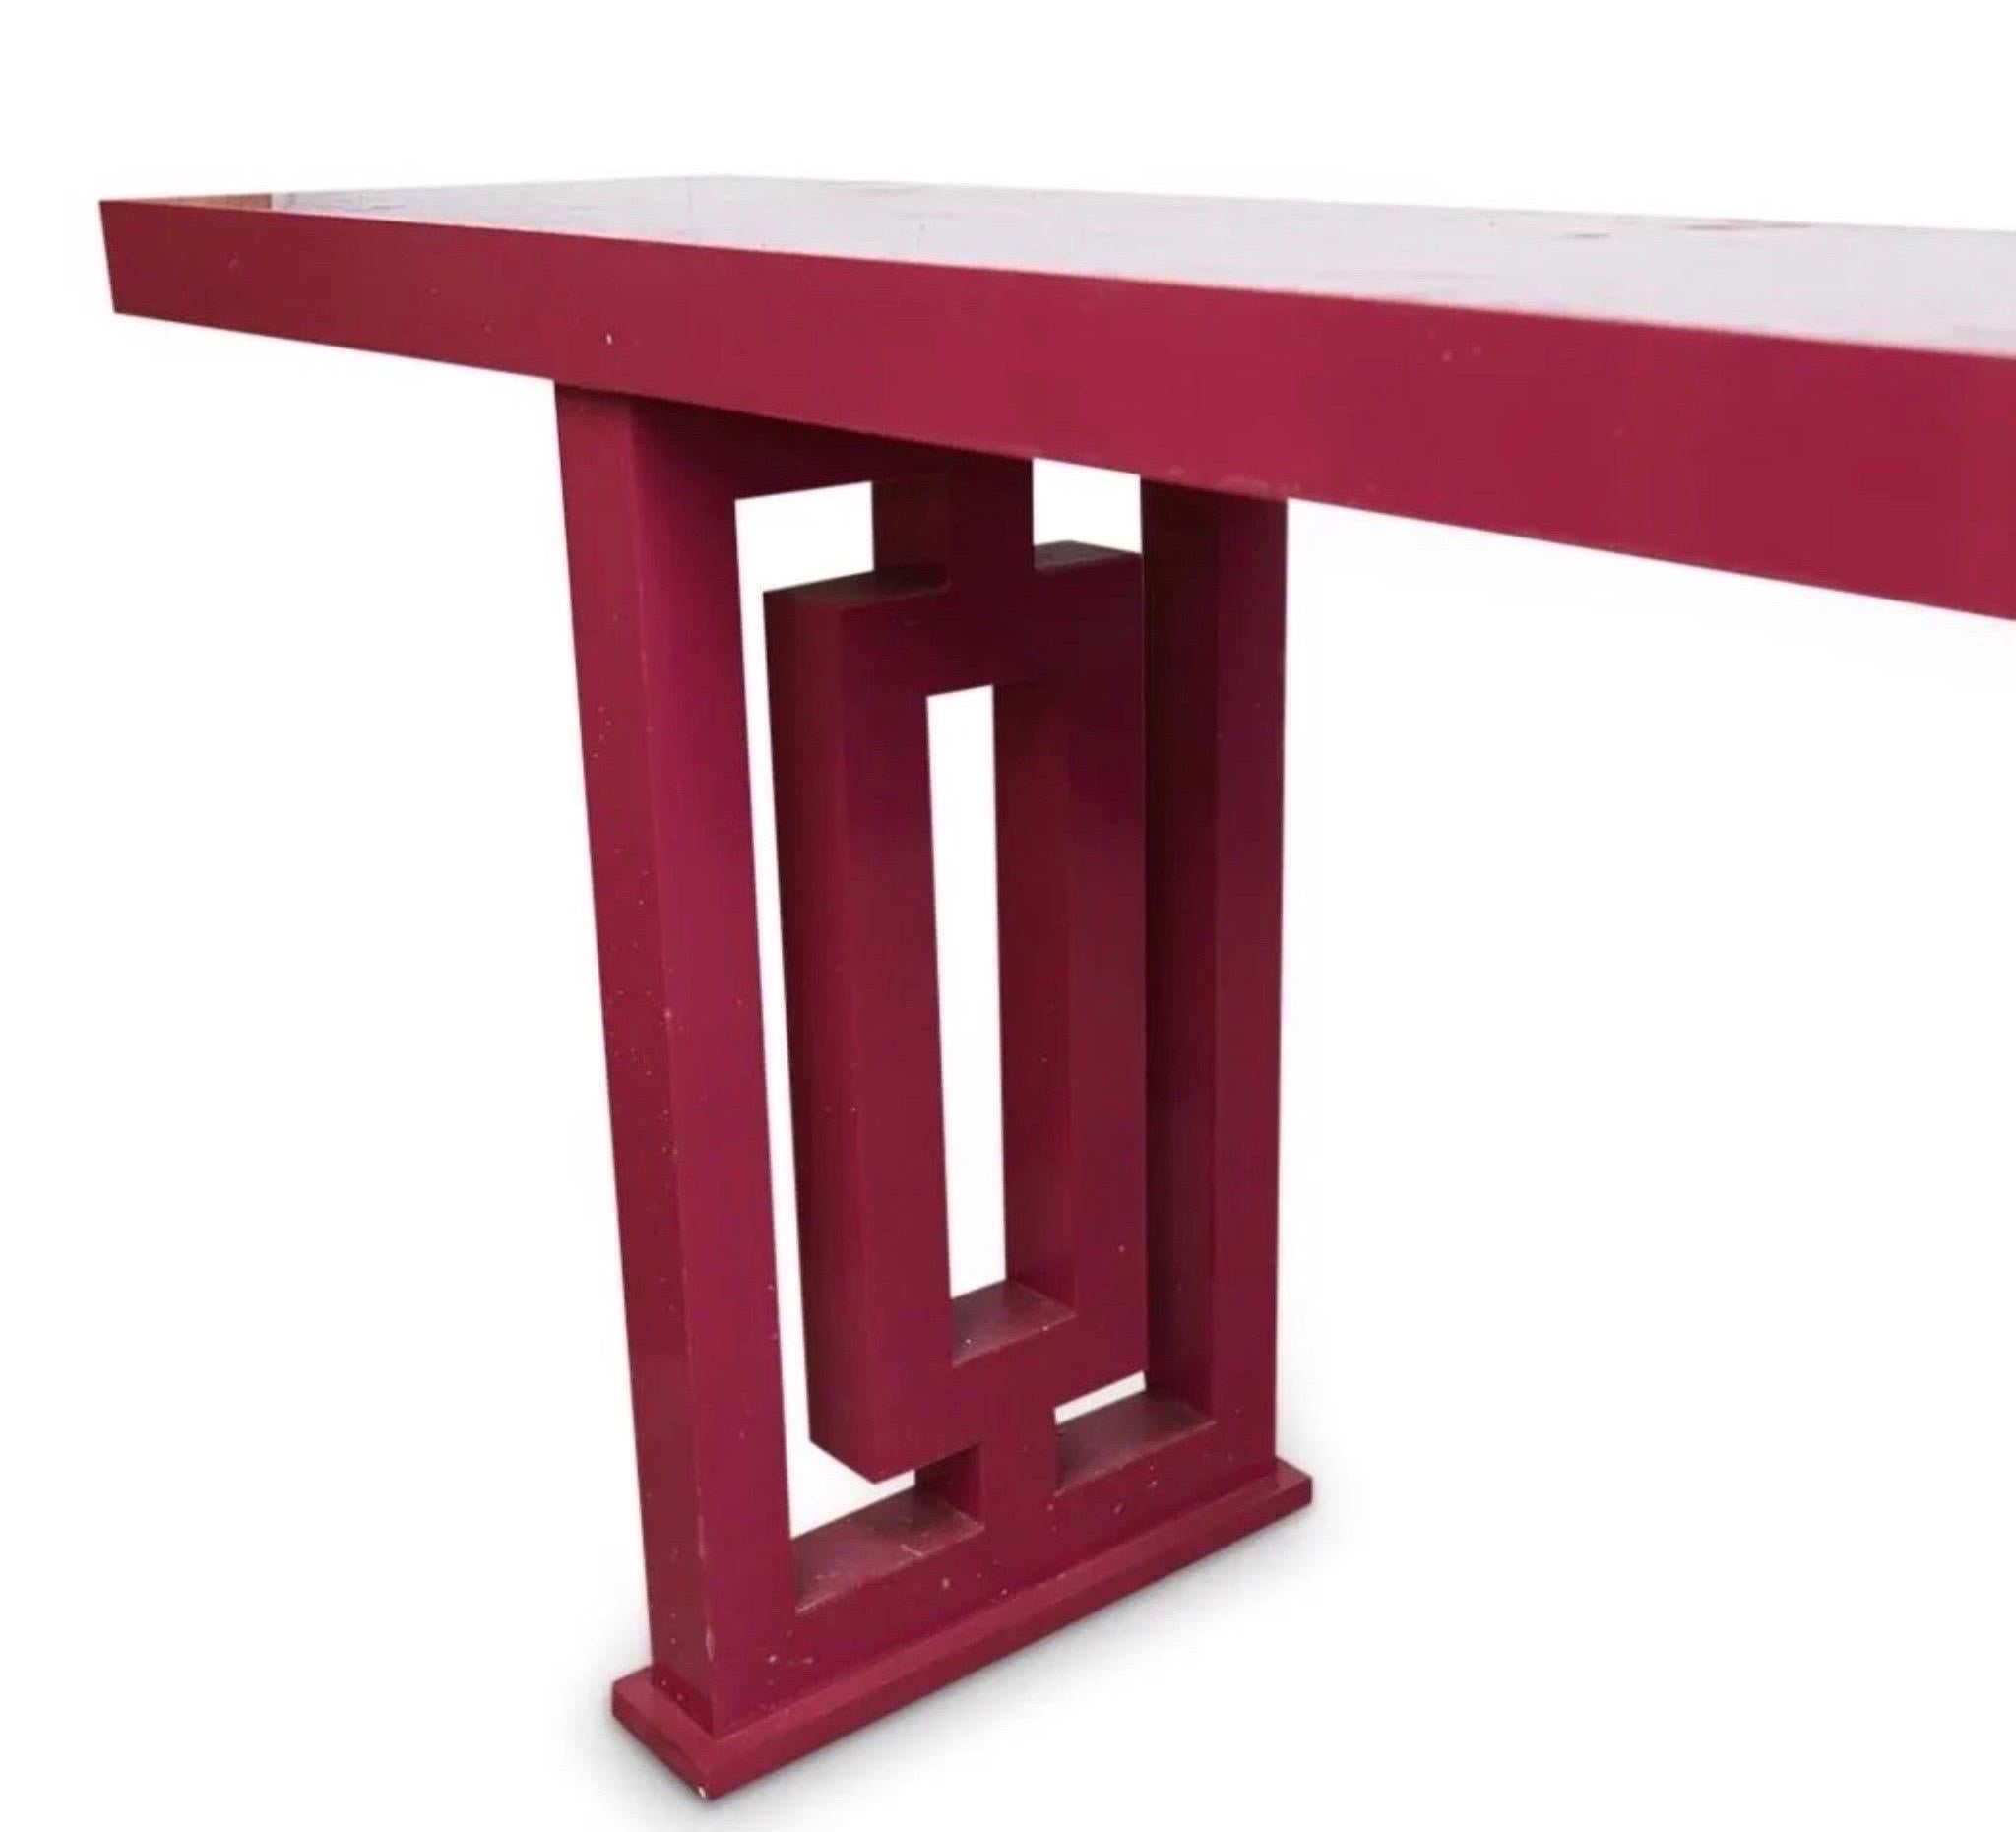 Monumentale table d'autel Hollywood Regency en bois laqué rose, composée d'un plateau rectangulaire minimaliste, reposant sur deux bases percées. 